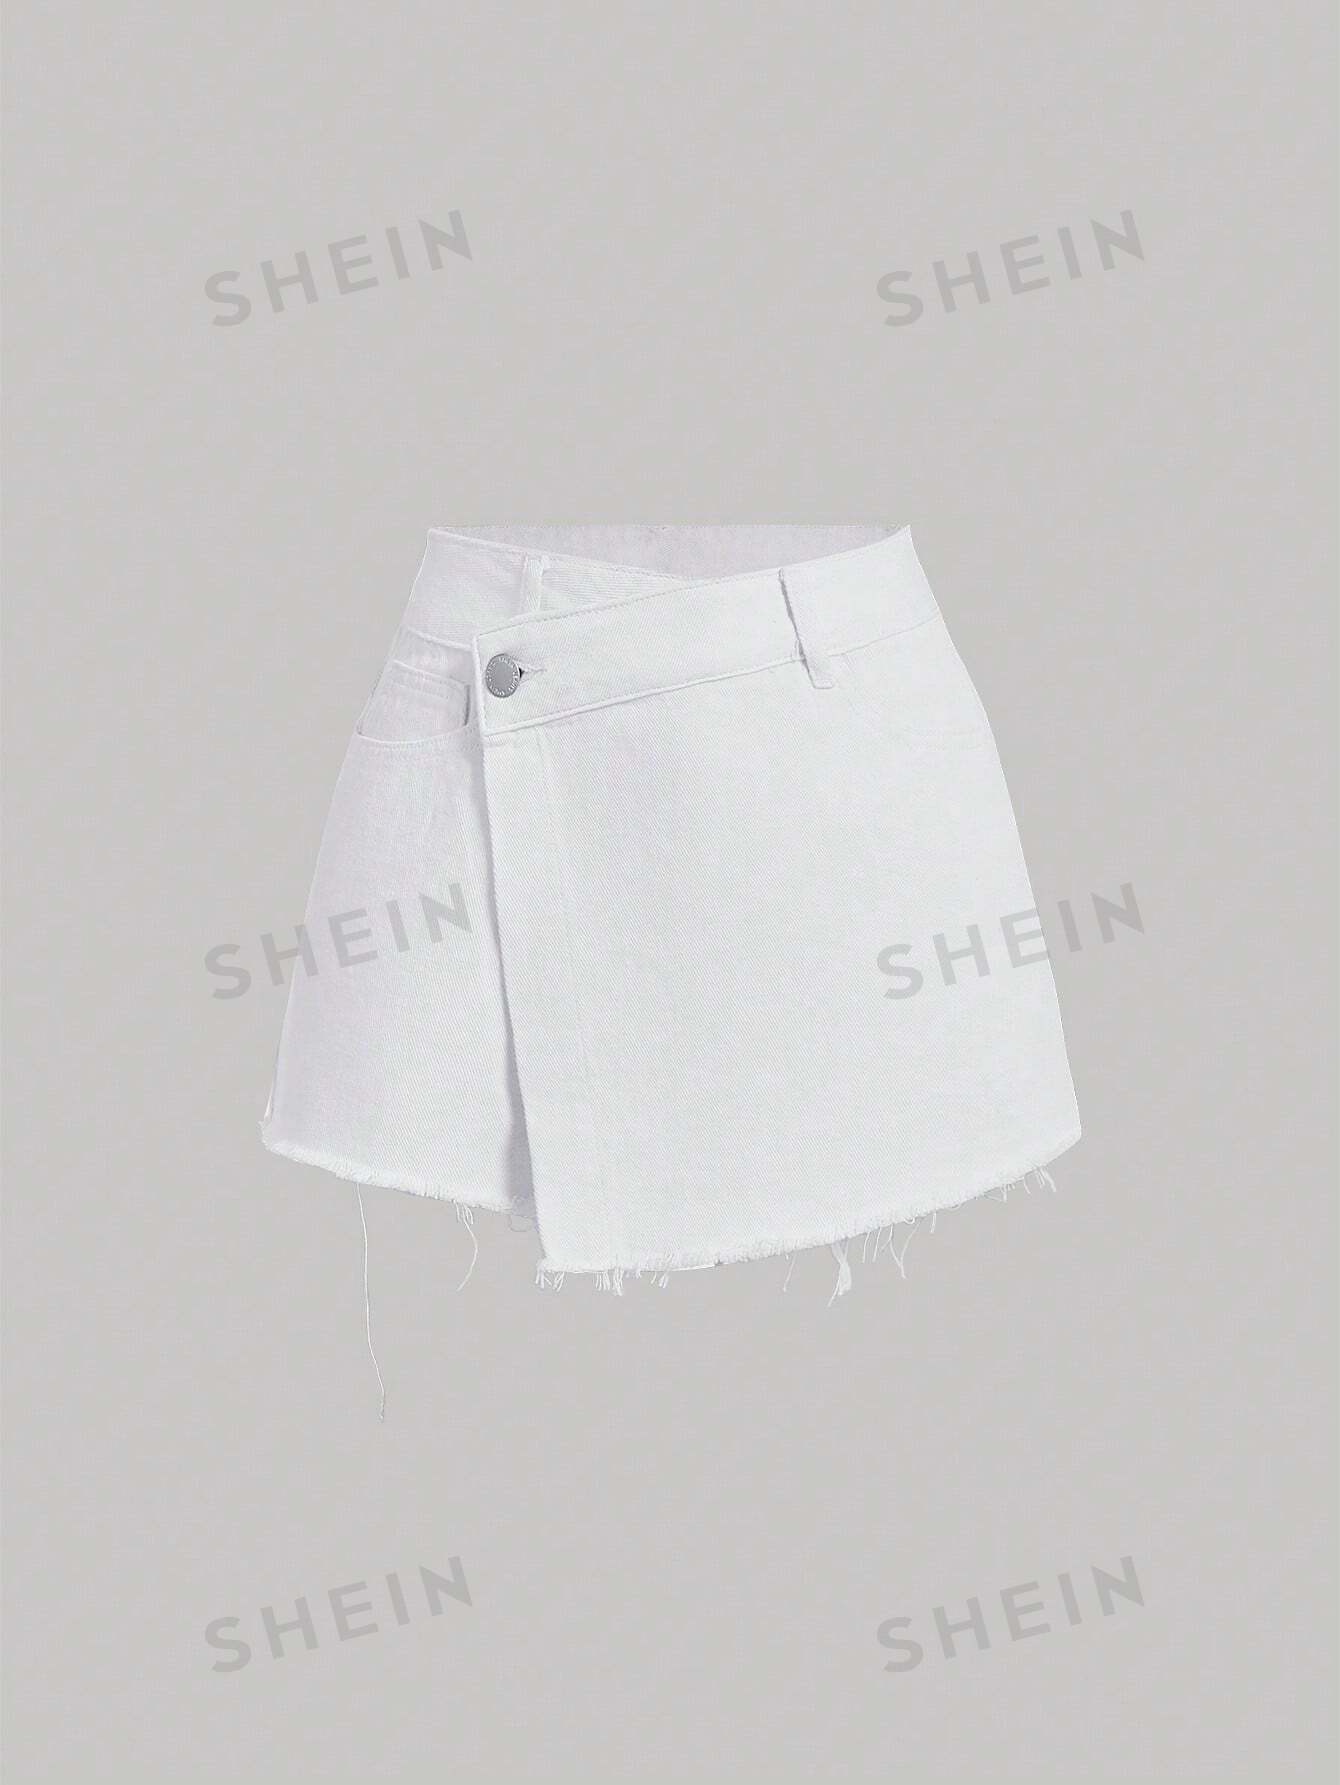 SHEIN MOD женские однотонные повседневные джинсовые шорты с потертым краем, белый женские джинсовые шорты летние модные однотонные джинсовые шорты с карманами женские повседневные прямые джинсовые шорты на шнуровке с в